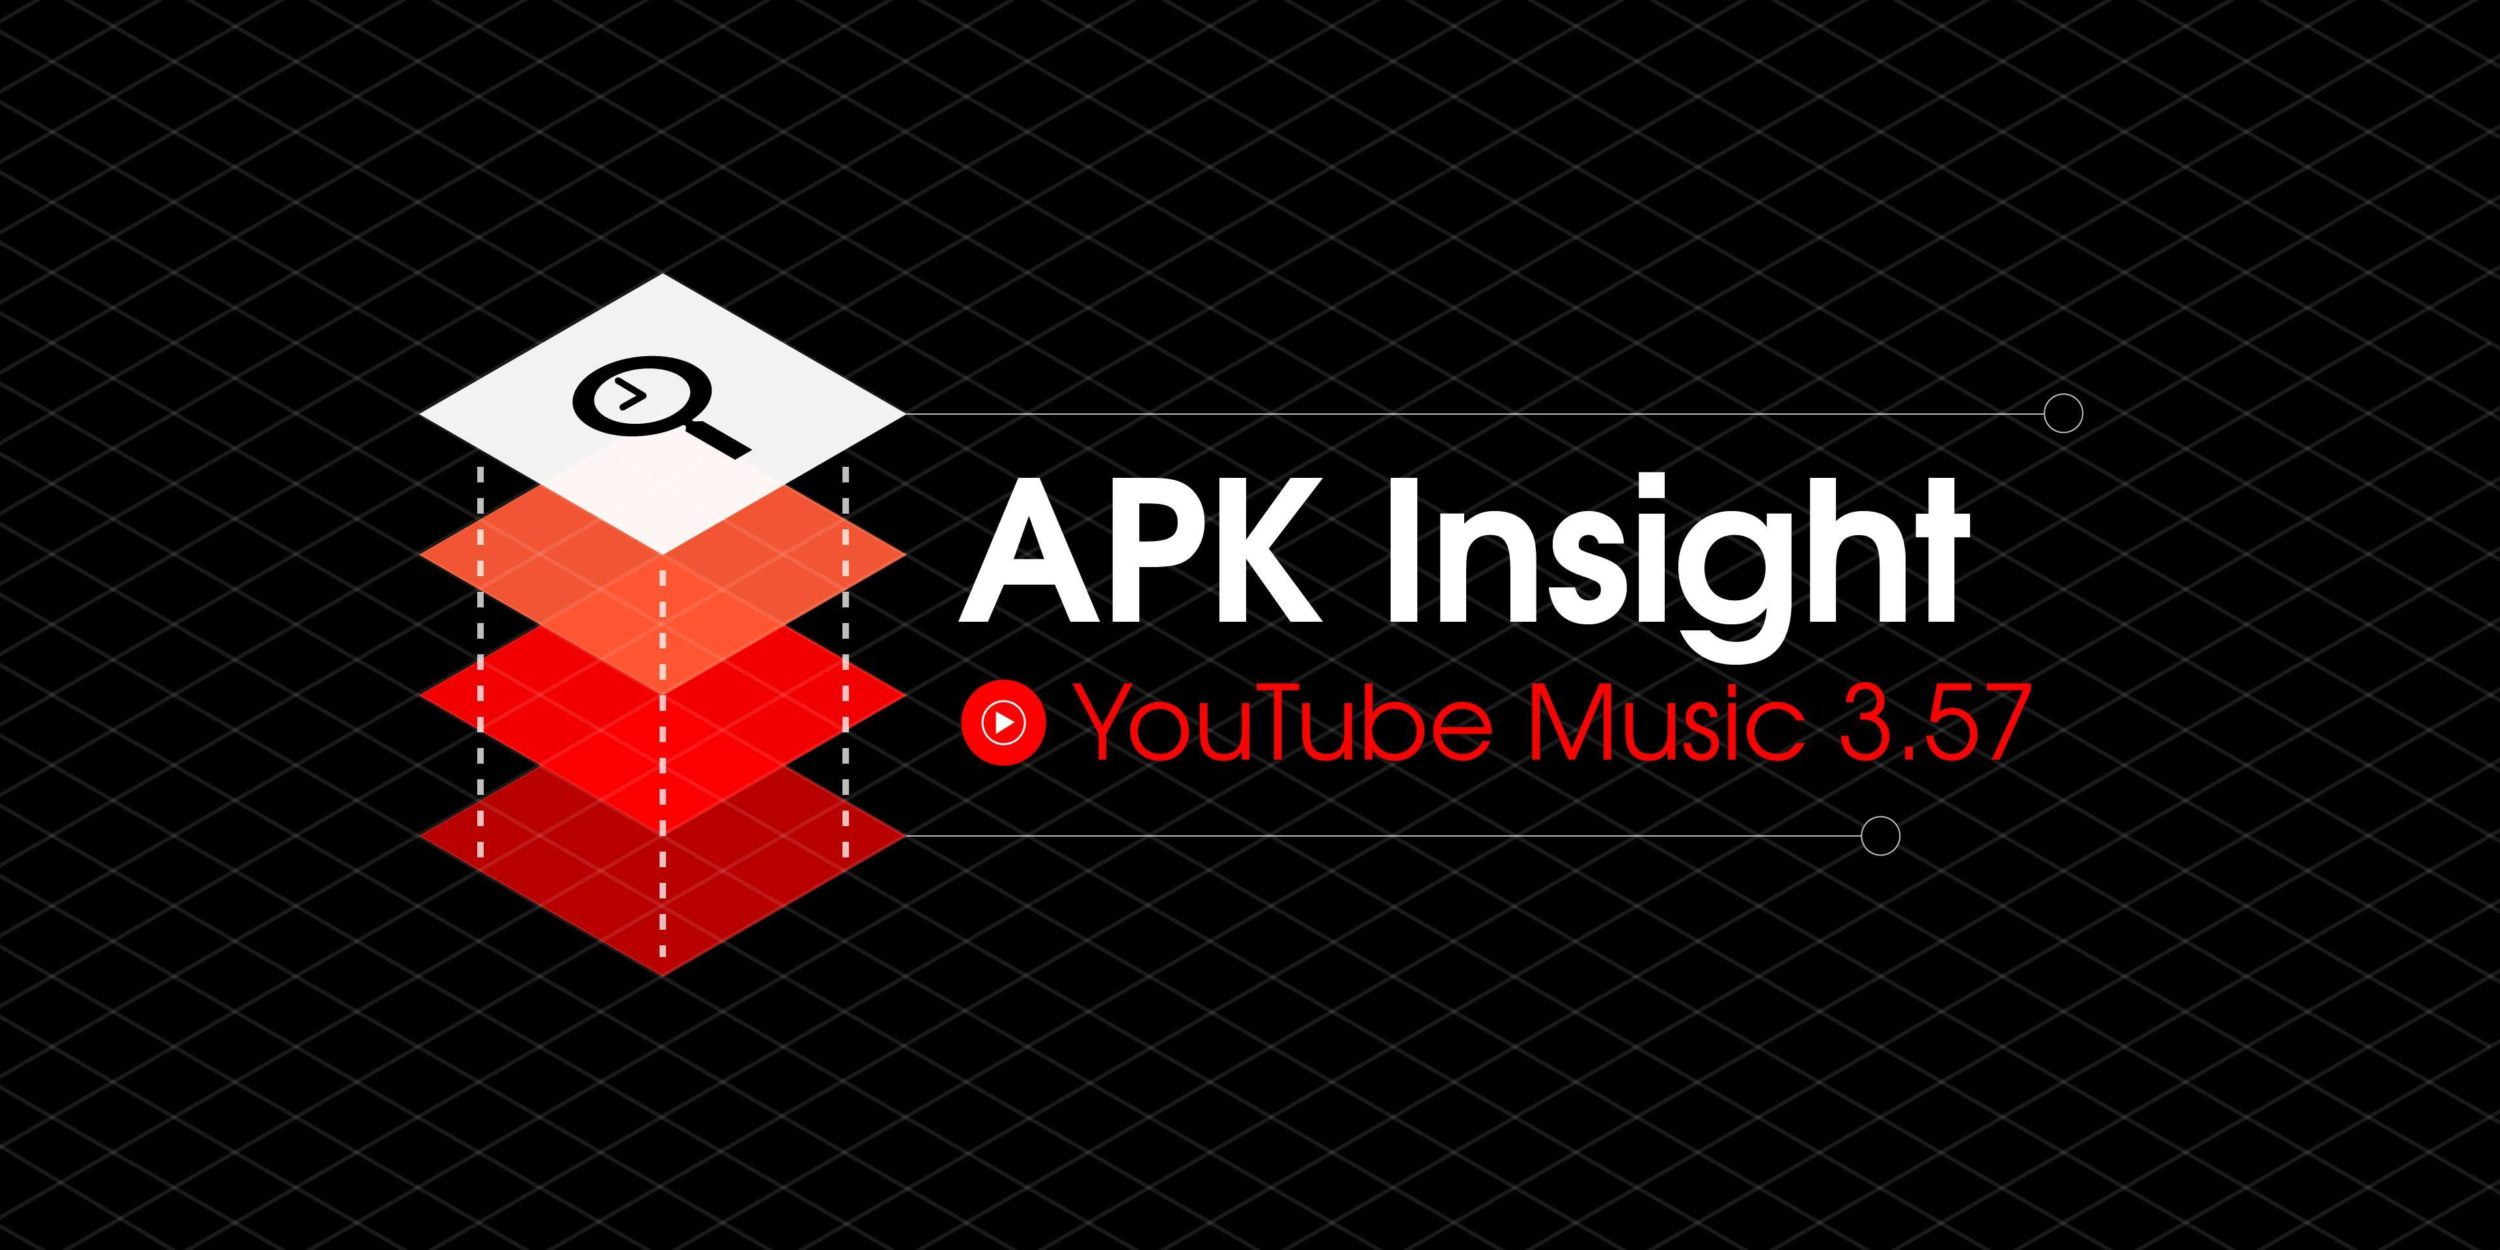 Aria di novità in casa YouTube Music: presto disponibili due nuove funzionalità (foto)